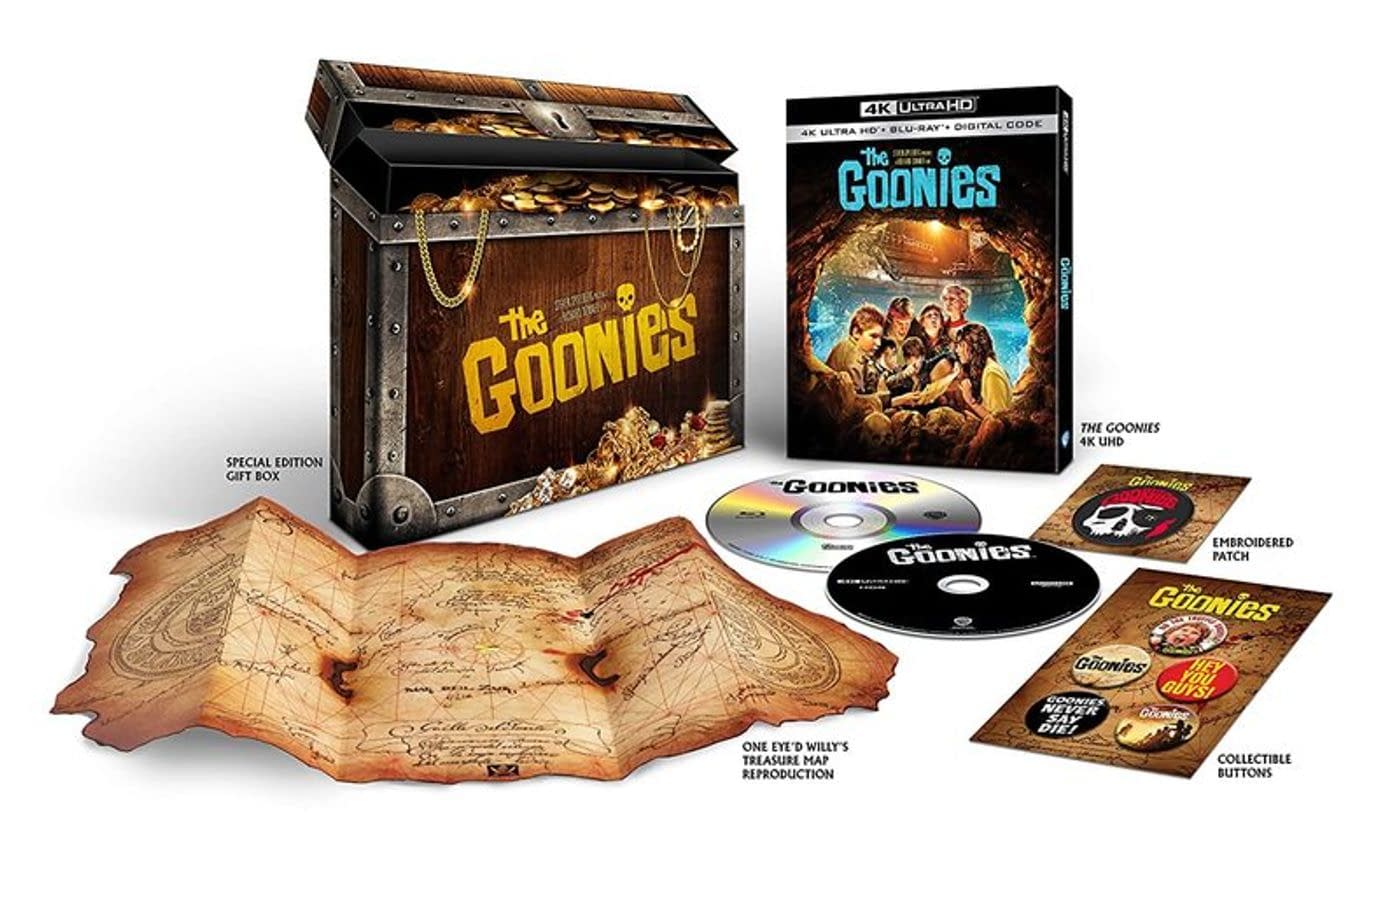 Goonies-4K-Blu-ray-Set.-Credit-Warner-Bros..jpg